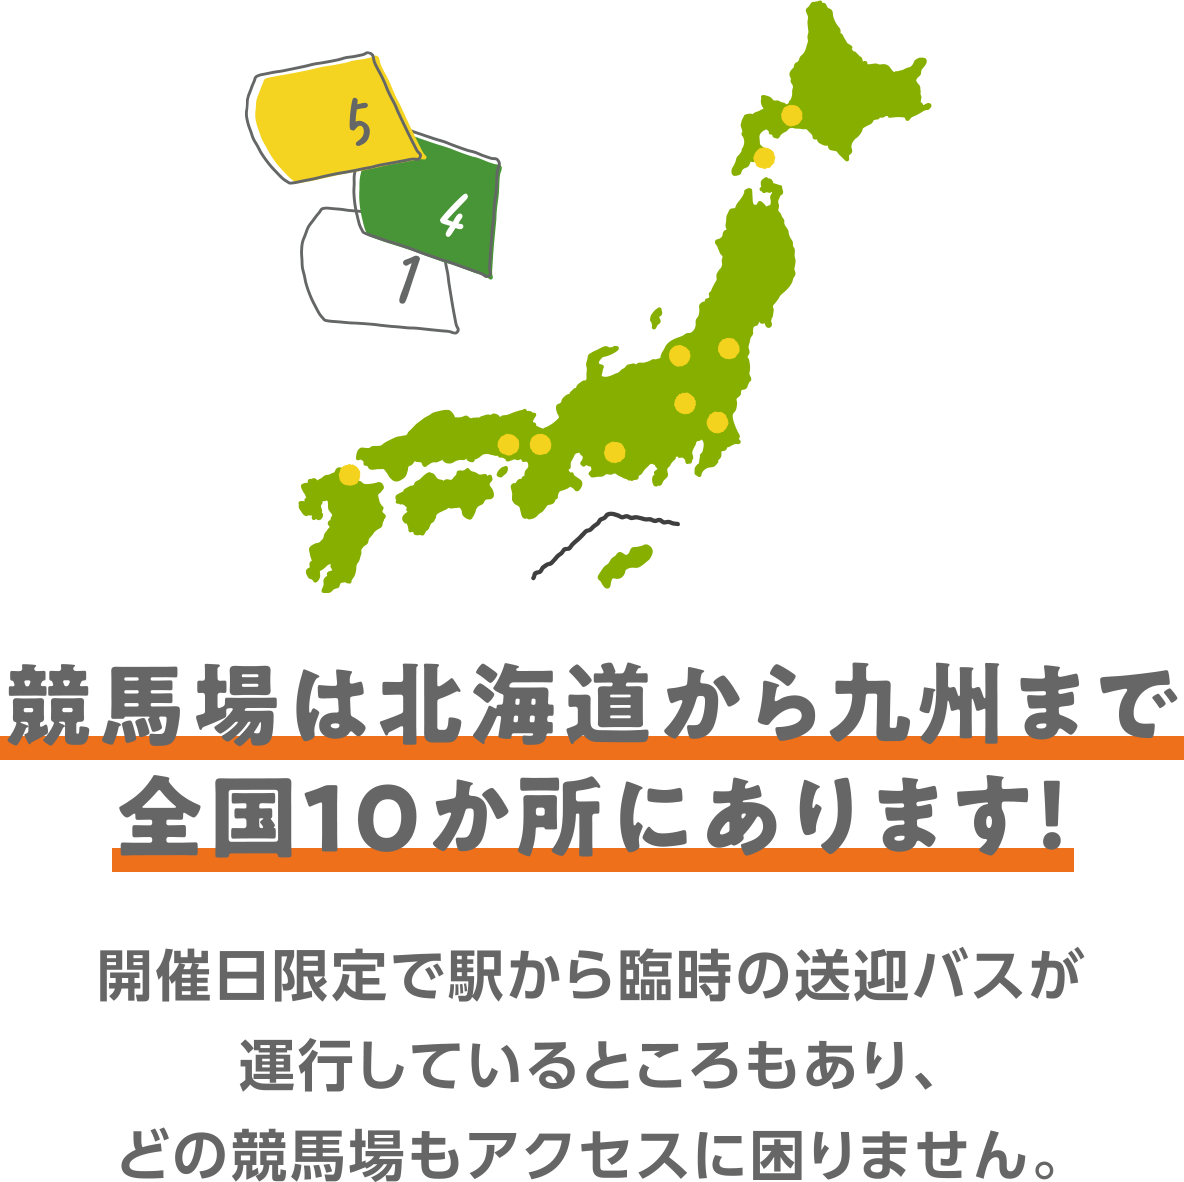 競馬場は北海道から九州まで全国10か所にあります！開催日限定で駅から臨時の送迎バスが運行しているところもあり、どの競馬場もアクセスに困りません。